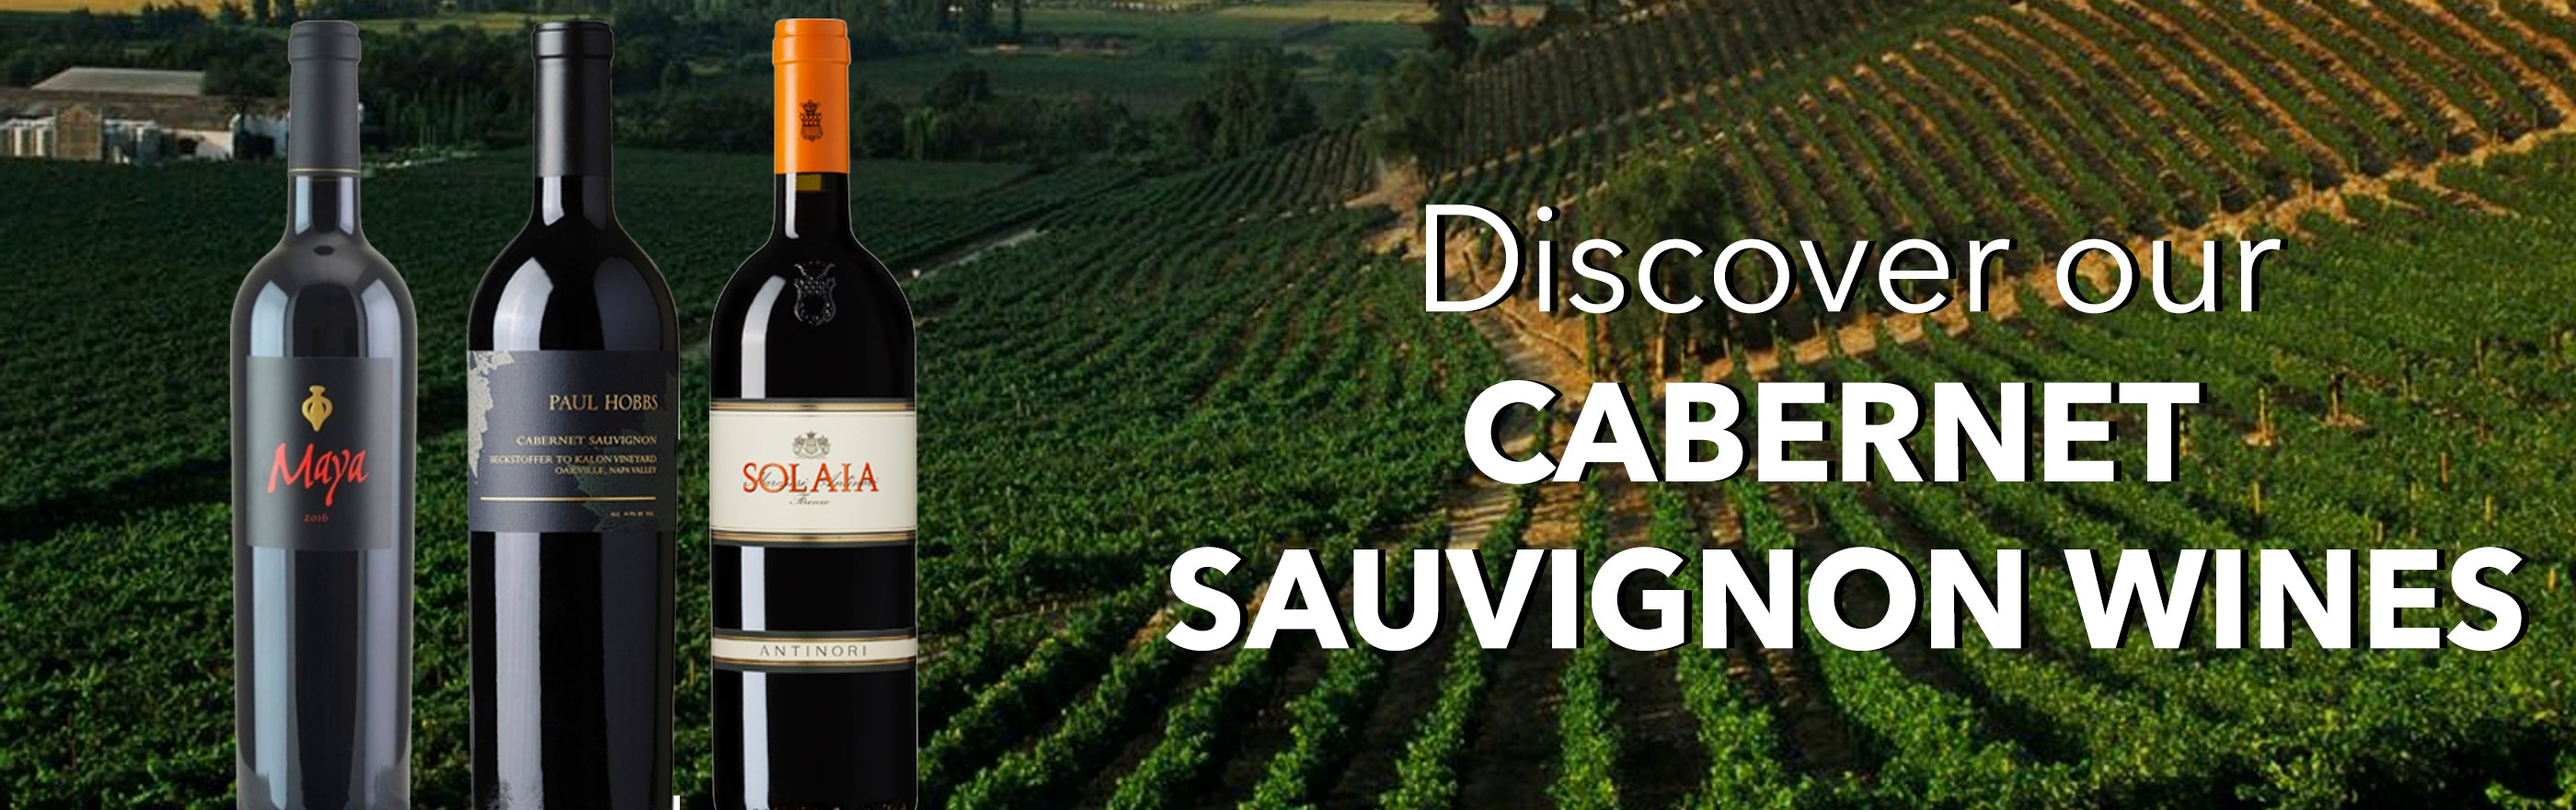 Buy cabernet sauvignon online shop